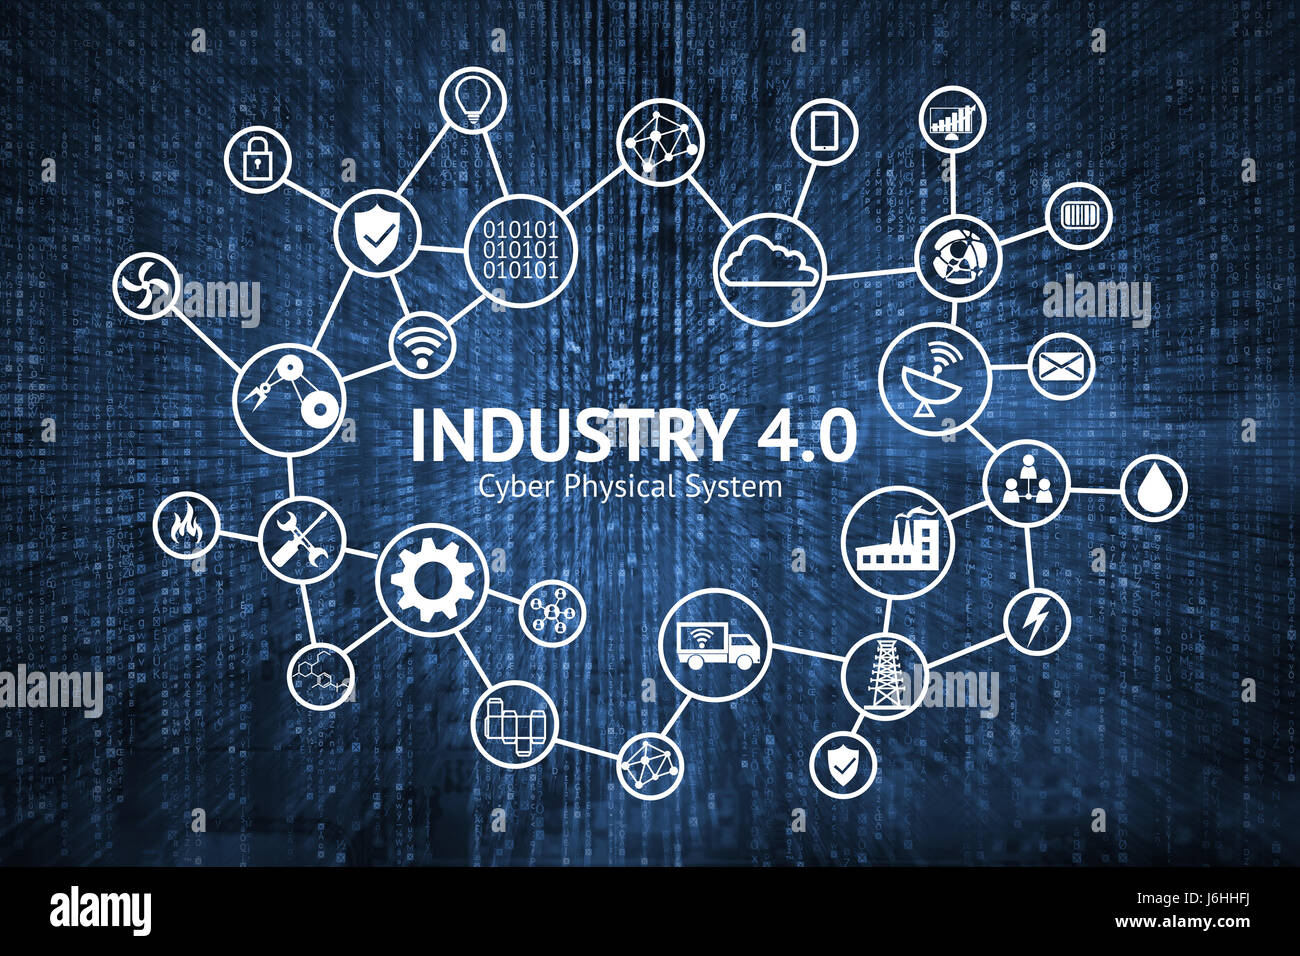 Industrielle 4.0 Cyber-Physical Systems Konzept, Ikone der Industrie 4.0, Internet der Dinge-Netzwerk, intelligente Fabrik Lösung, Fertigungstechnik, autom Stockfoto